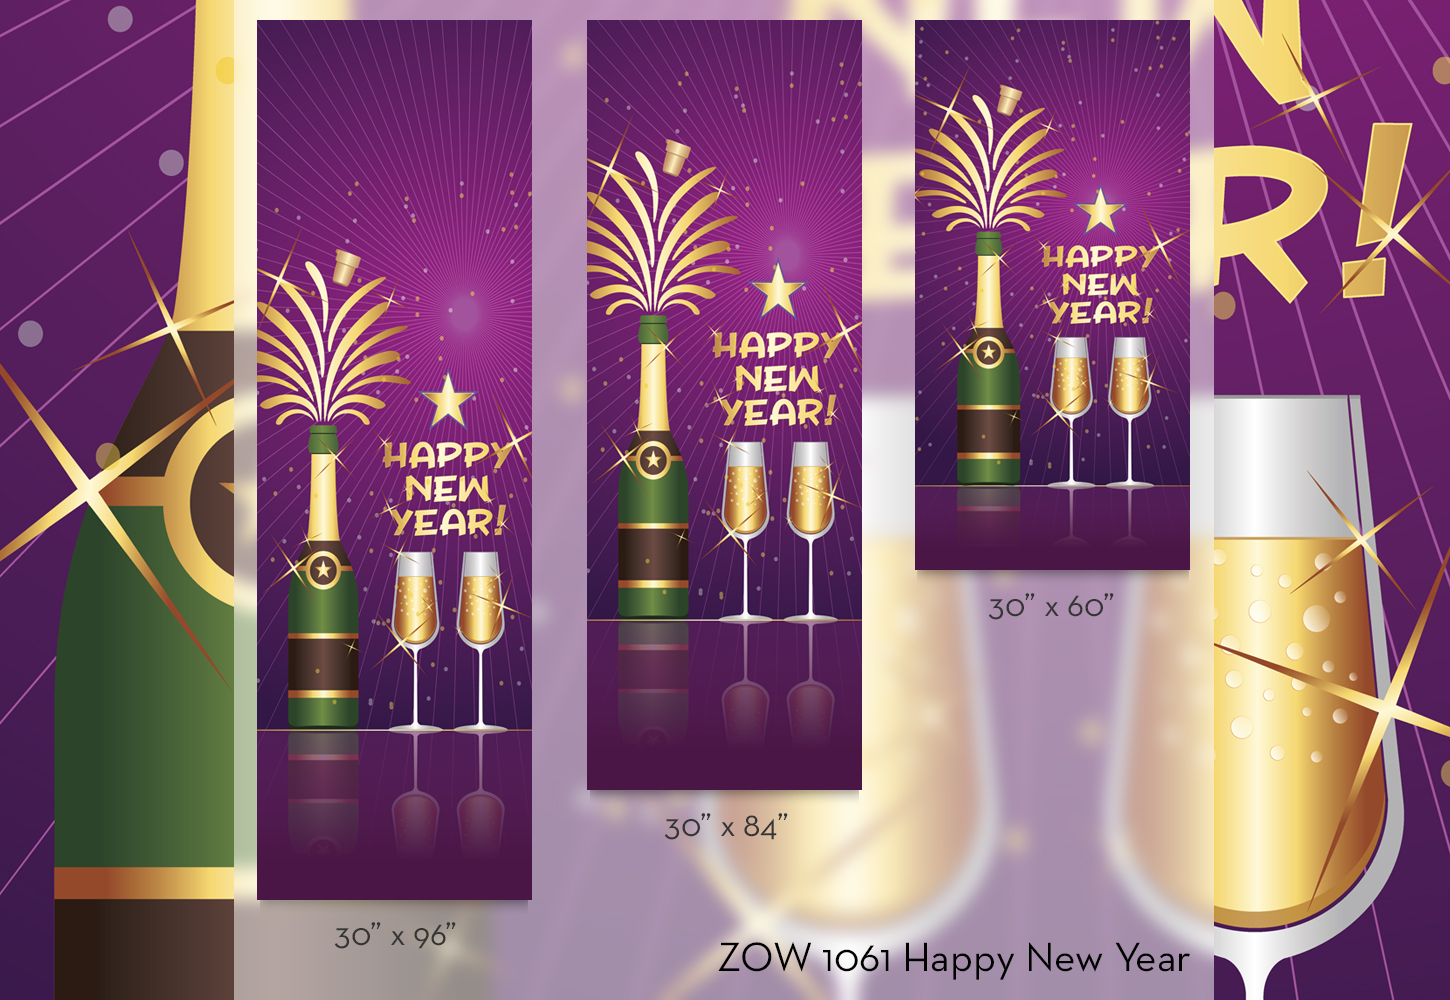 ZOW 1061 Happy New Year